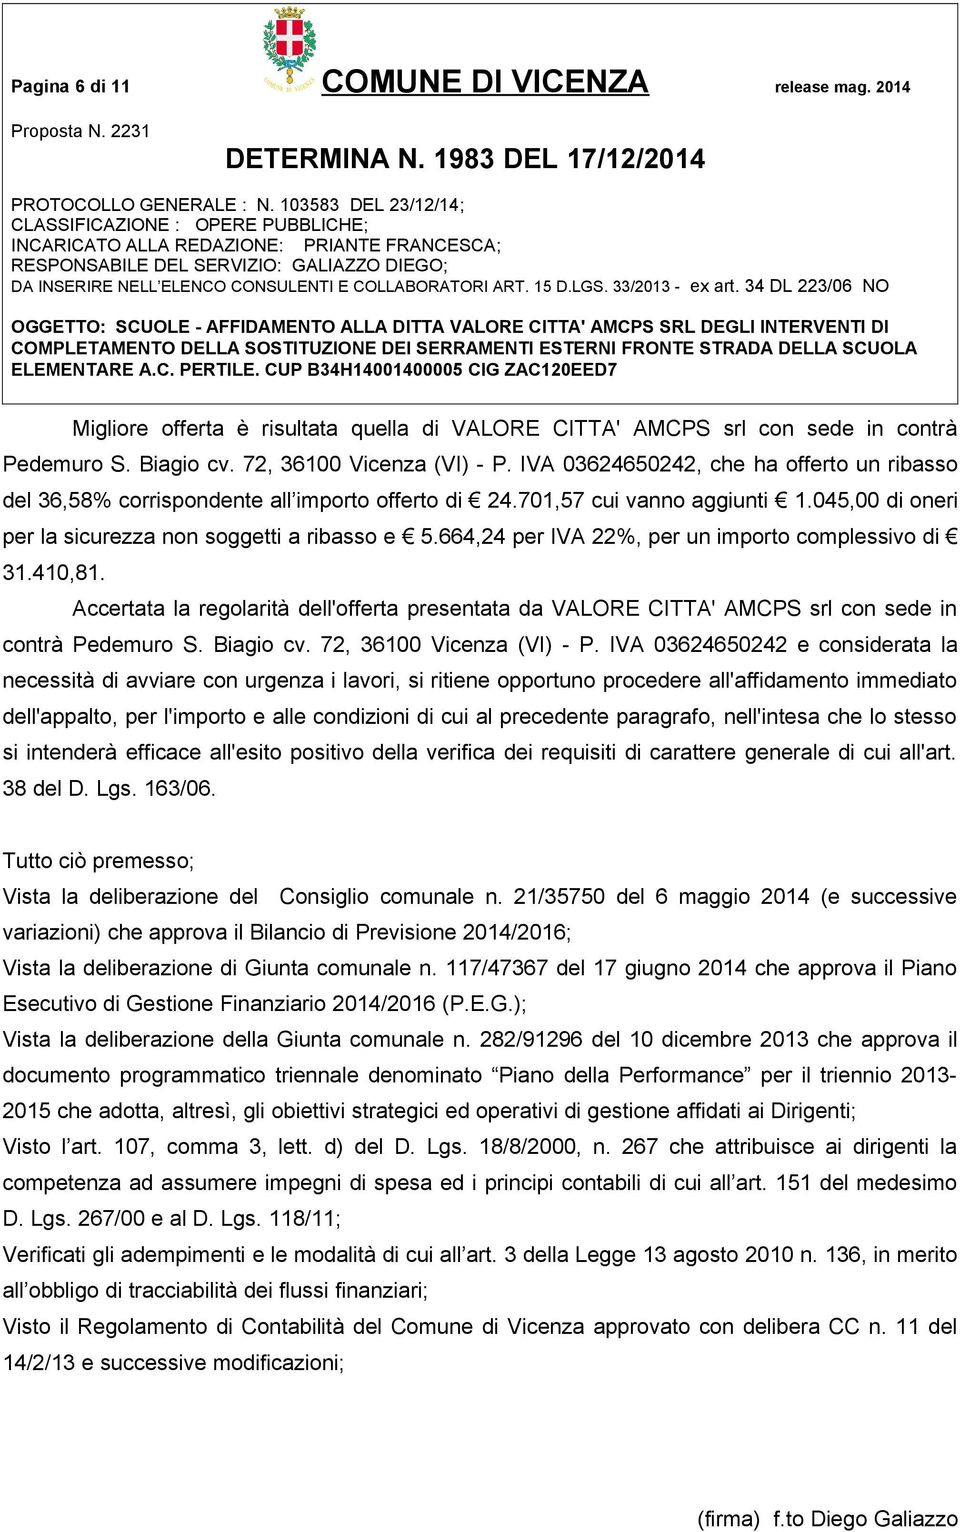 664,24 per IVA 22%, per un importo complessivo di 31.410,81. Accertata la regolarità dell'offerta presentata da VALORE CITTA' AMCPS srl con sede in contrà Pedemuro S. Biagio cv.